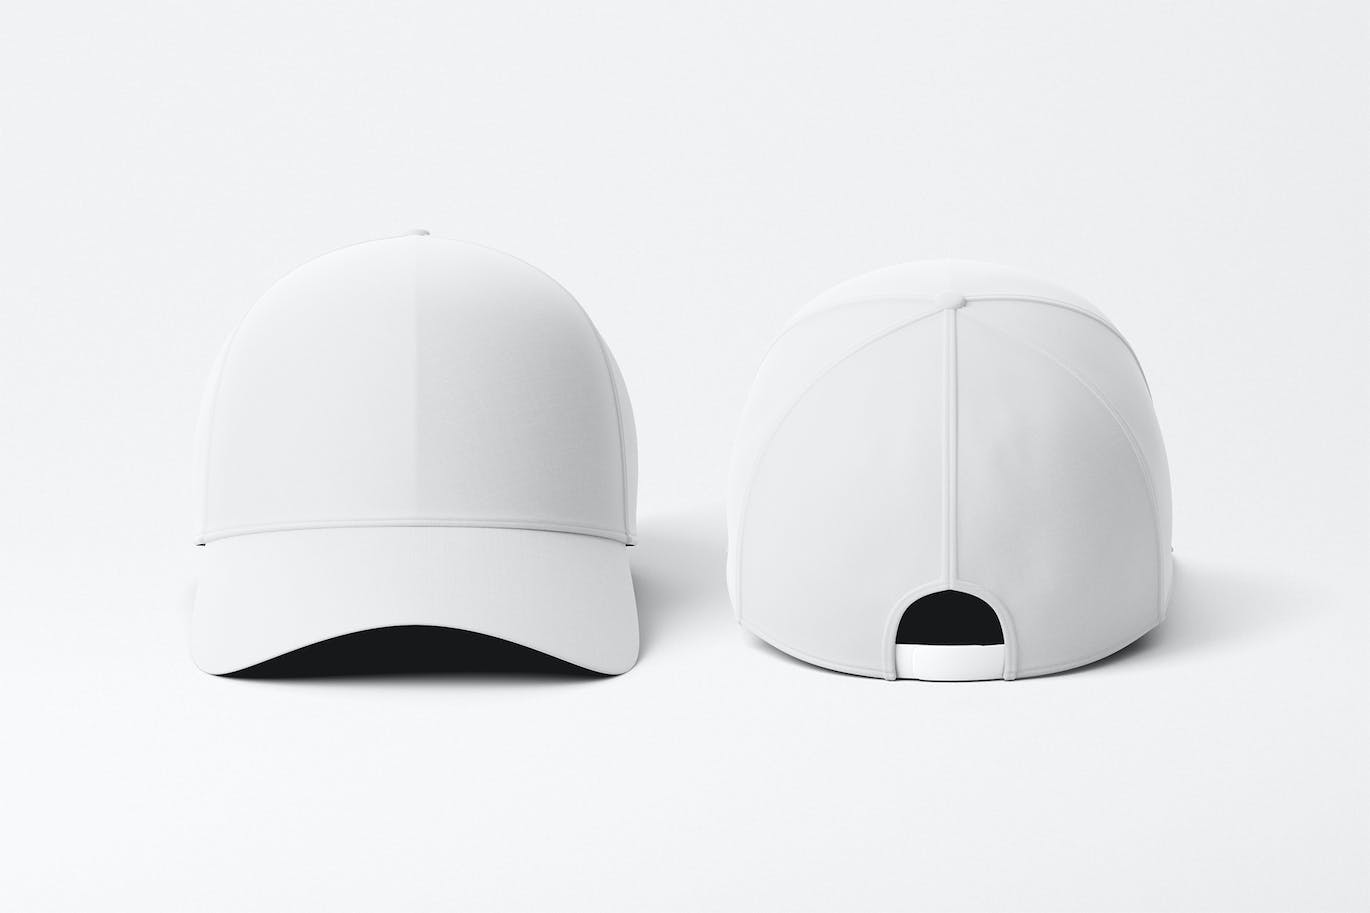 棒球帽运动品牌设计样机图模板 Baseball Cap Mockup 样机素材 第4张